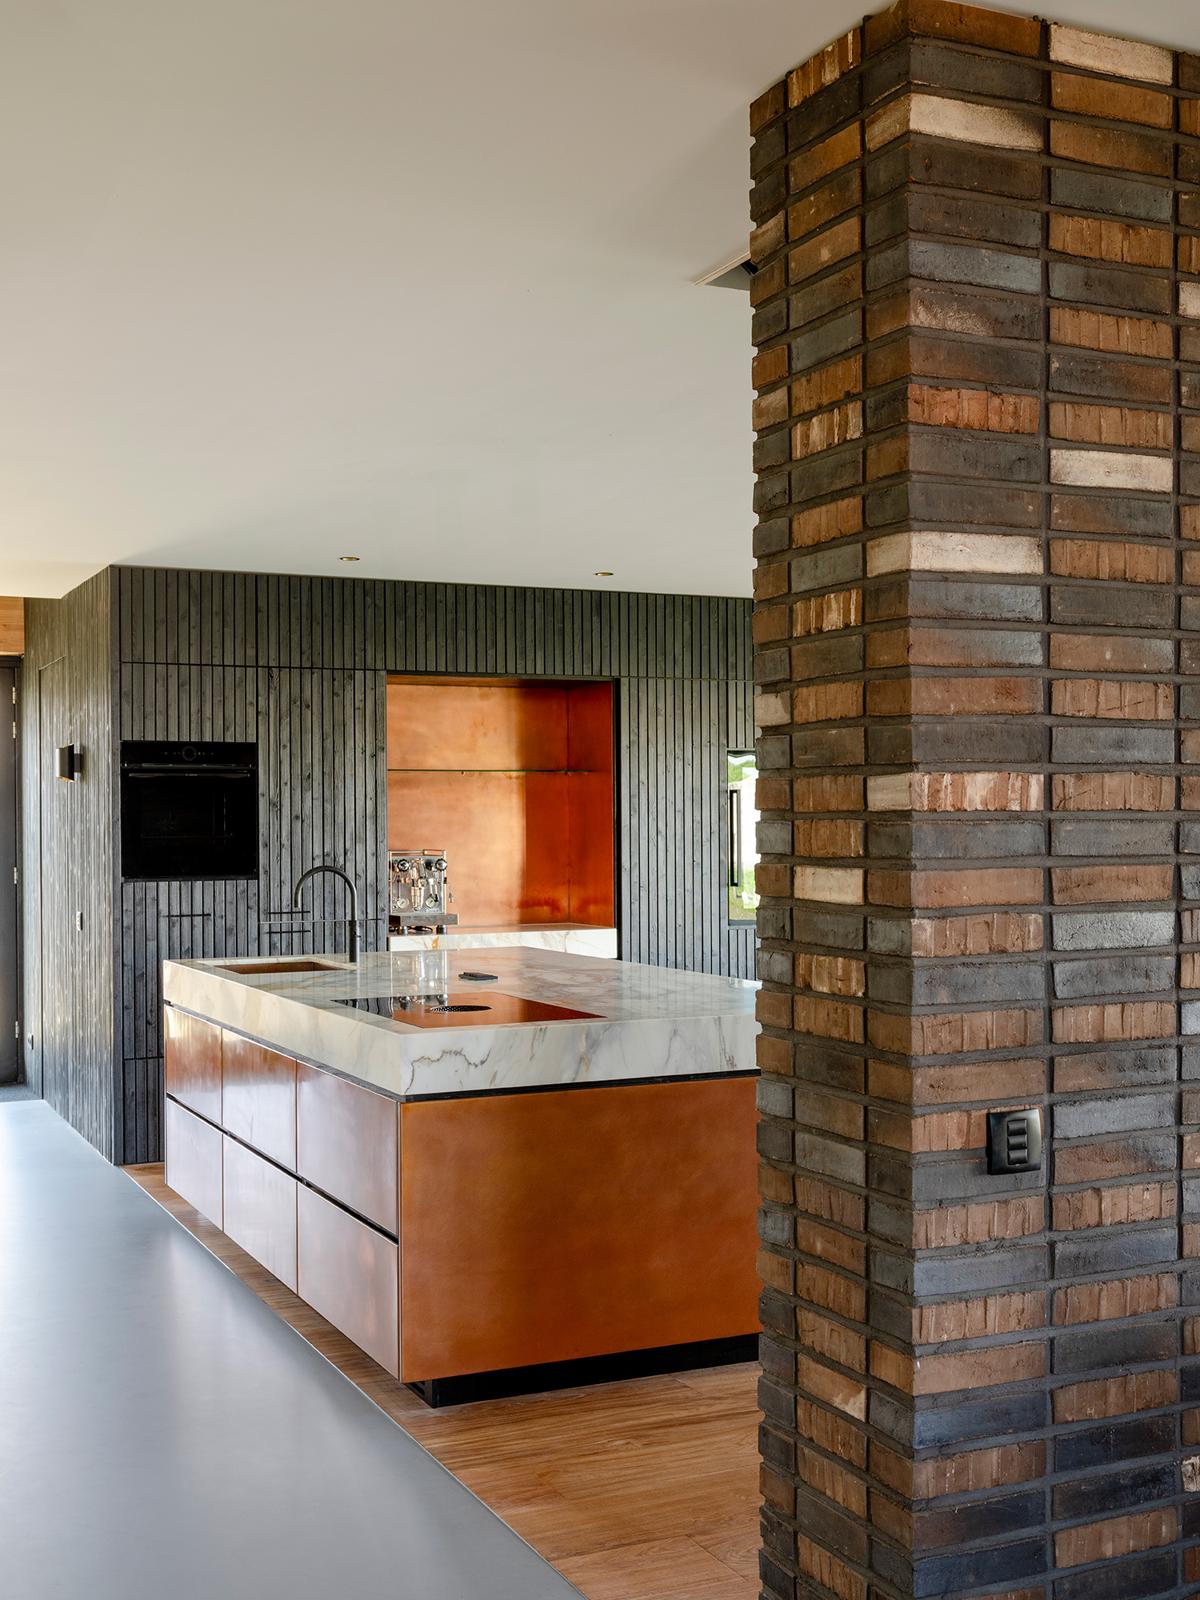 Tato moderní kuchyně se vyznačuje výrazným mramorovým ostrůvkem a teplými dřevěnými skříněmi, což spojuje luxus s přírodními materiály.